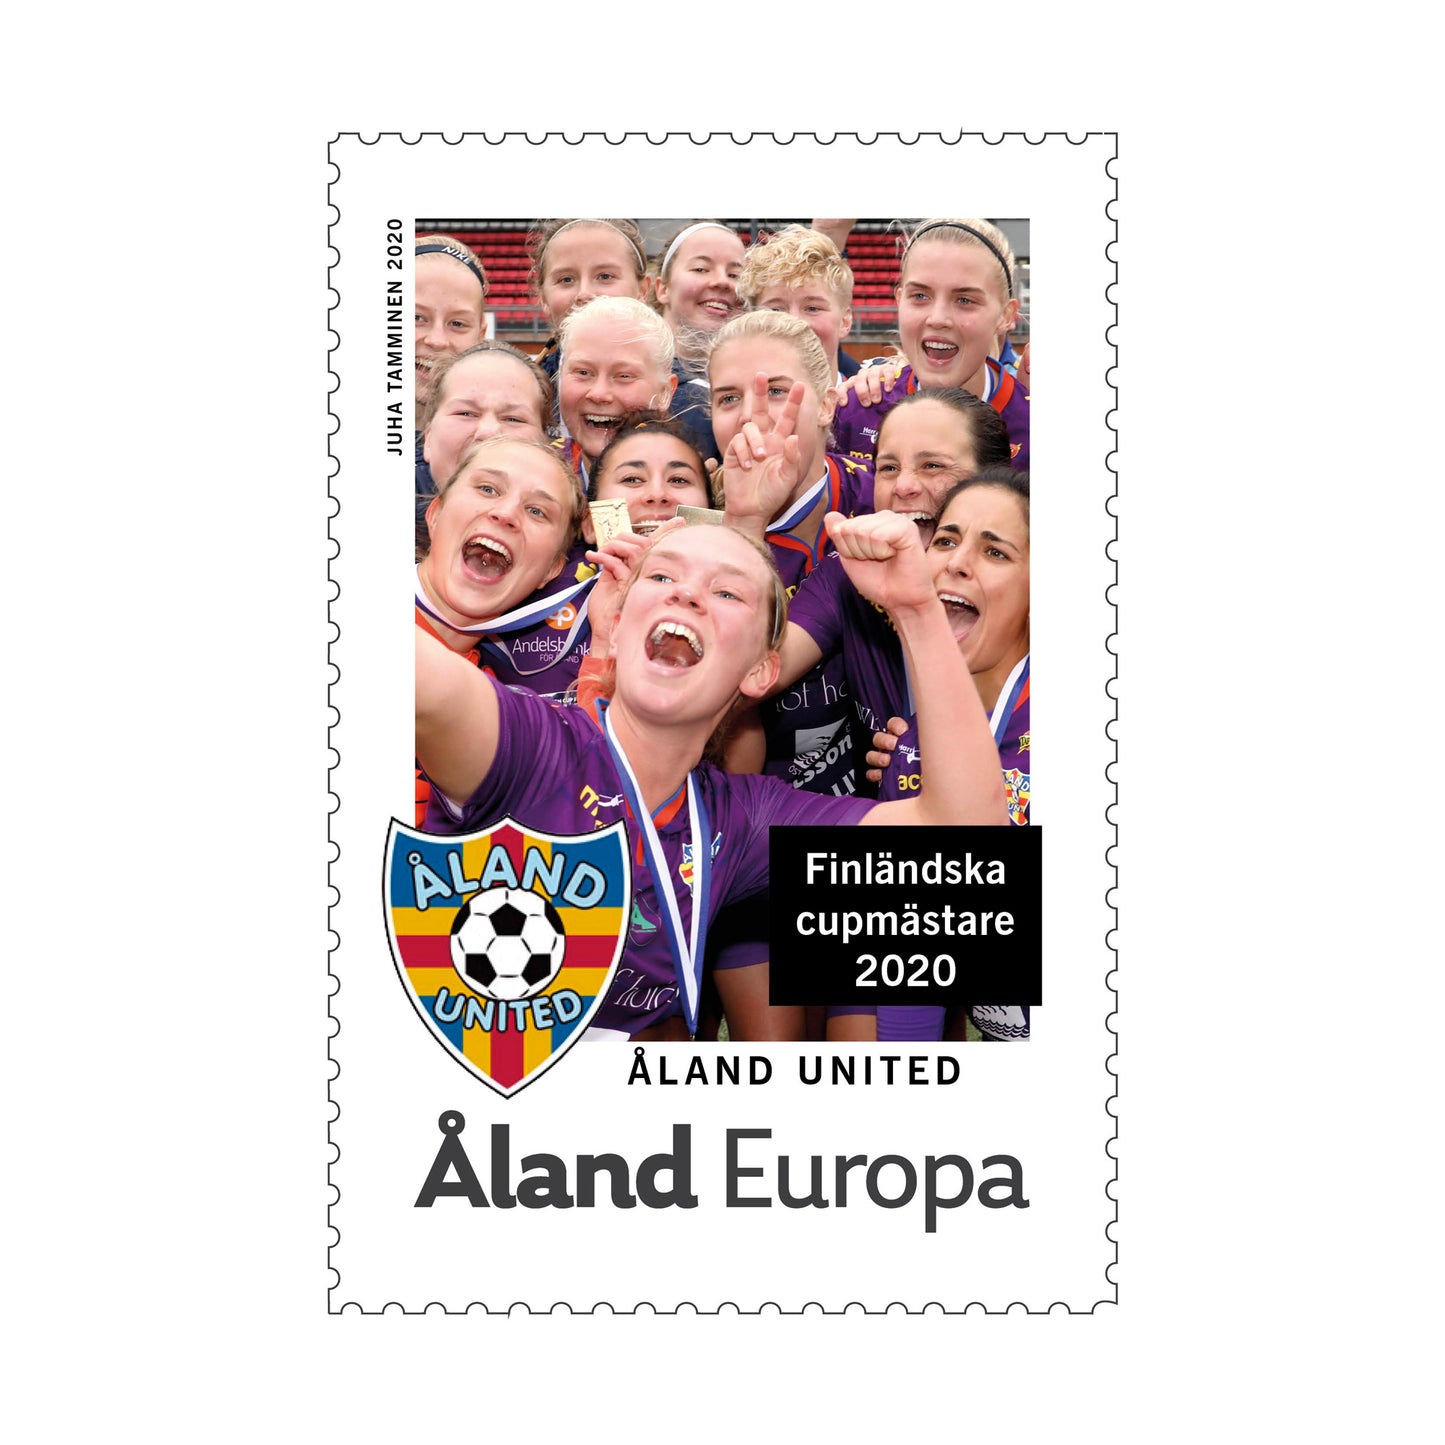 Finländska cupmästare 2020, Åland United -ostämplat